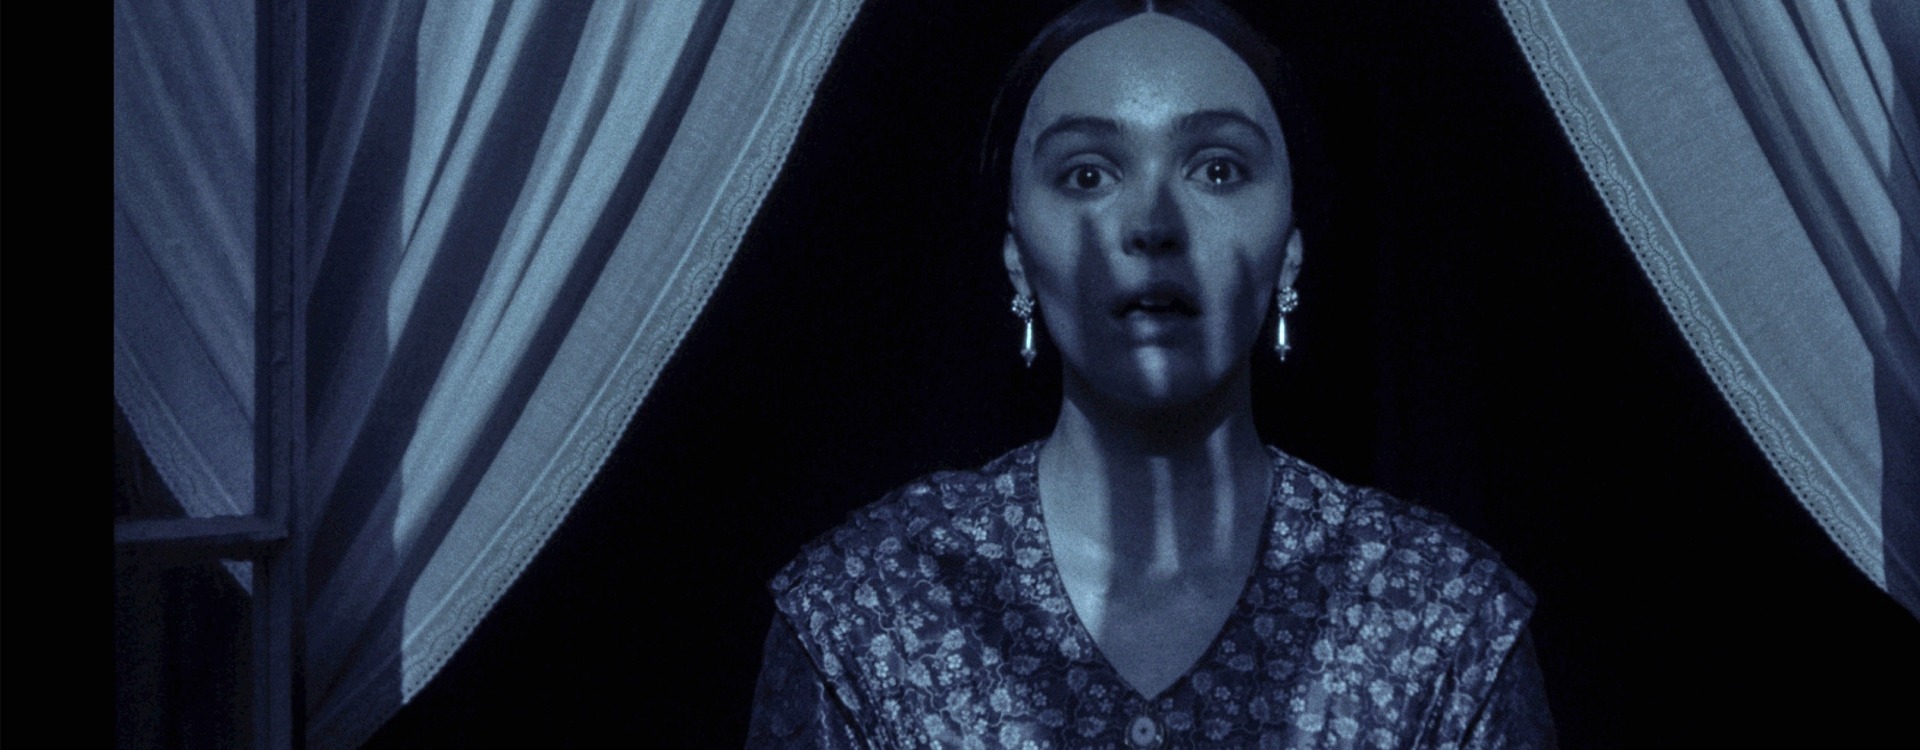 Nosferatu : la mise à jour d’Eggers du classique des vampires fait peur dans le premier aperçu